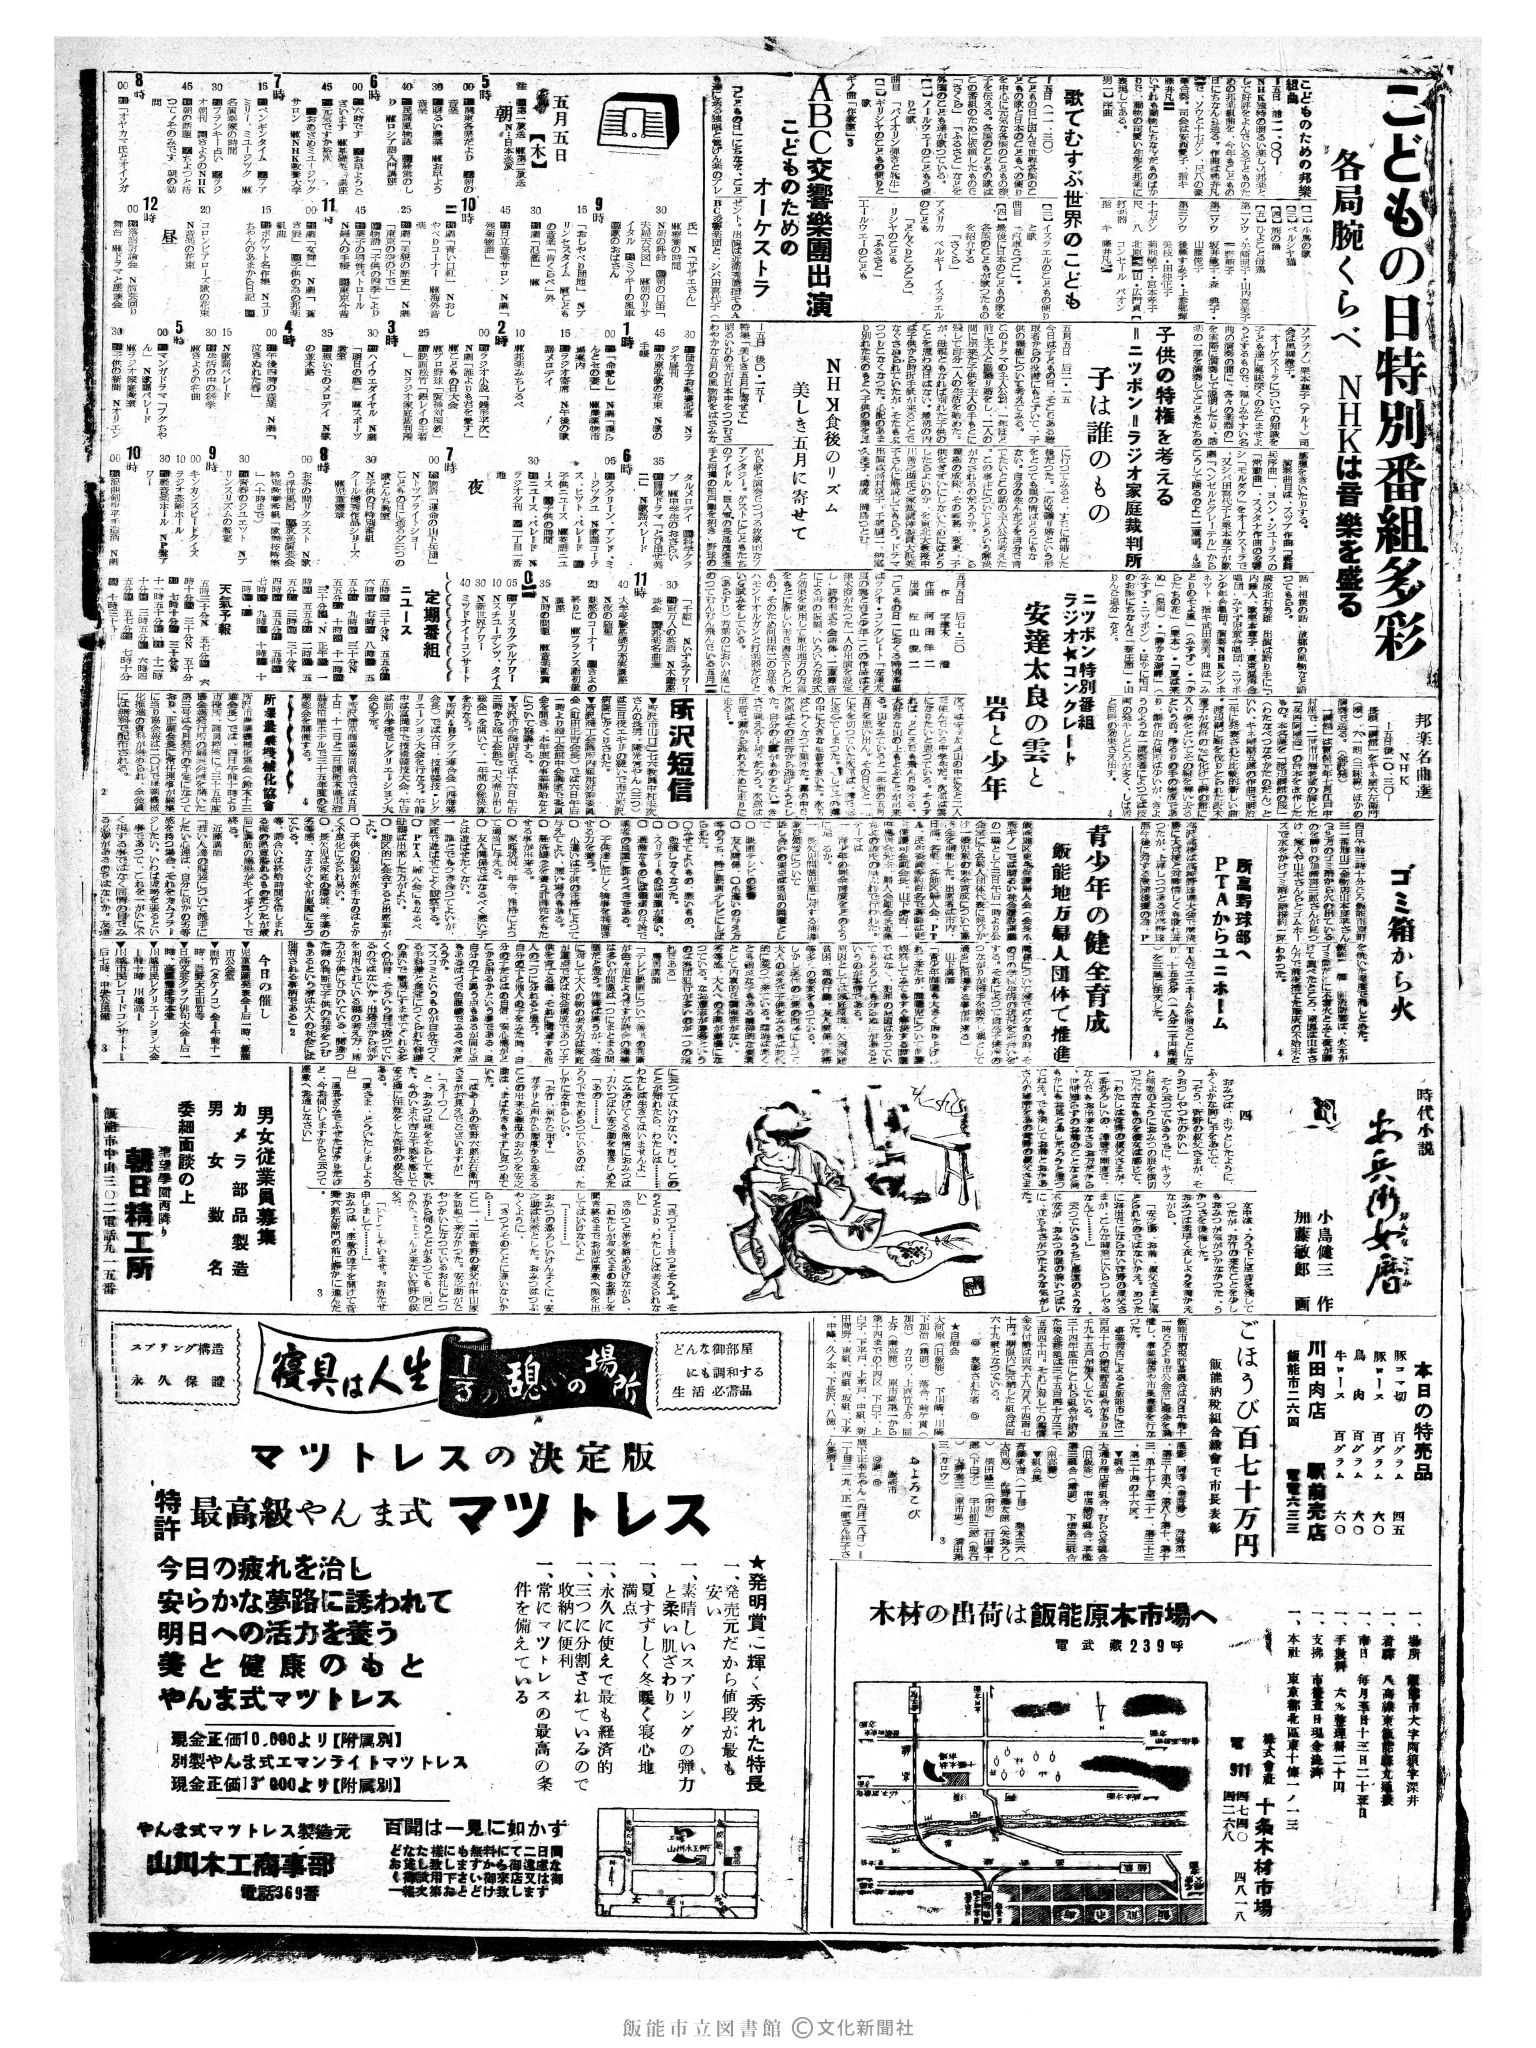 昭和35年5月5日3面 (第3522号) 2ページと同じ内容が印刷されています